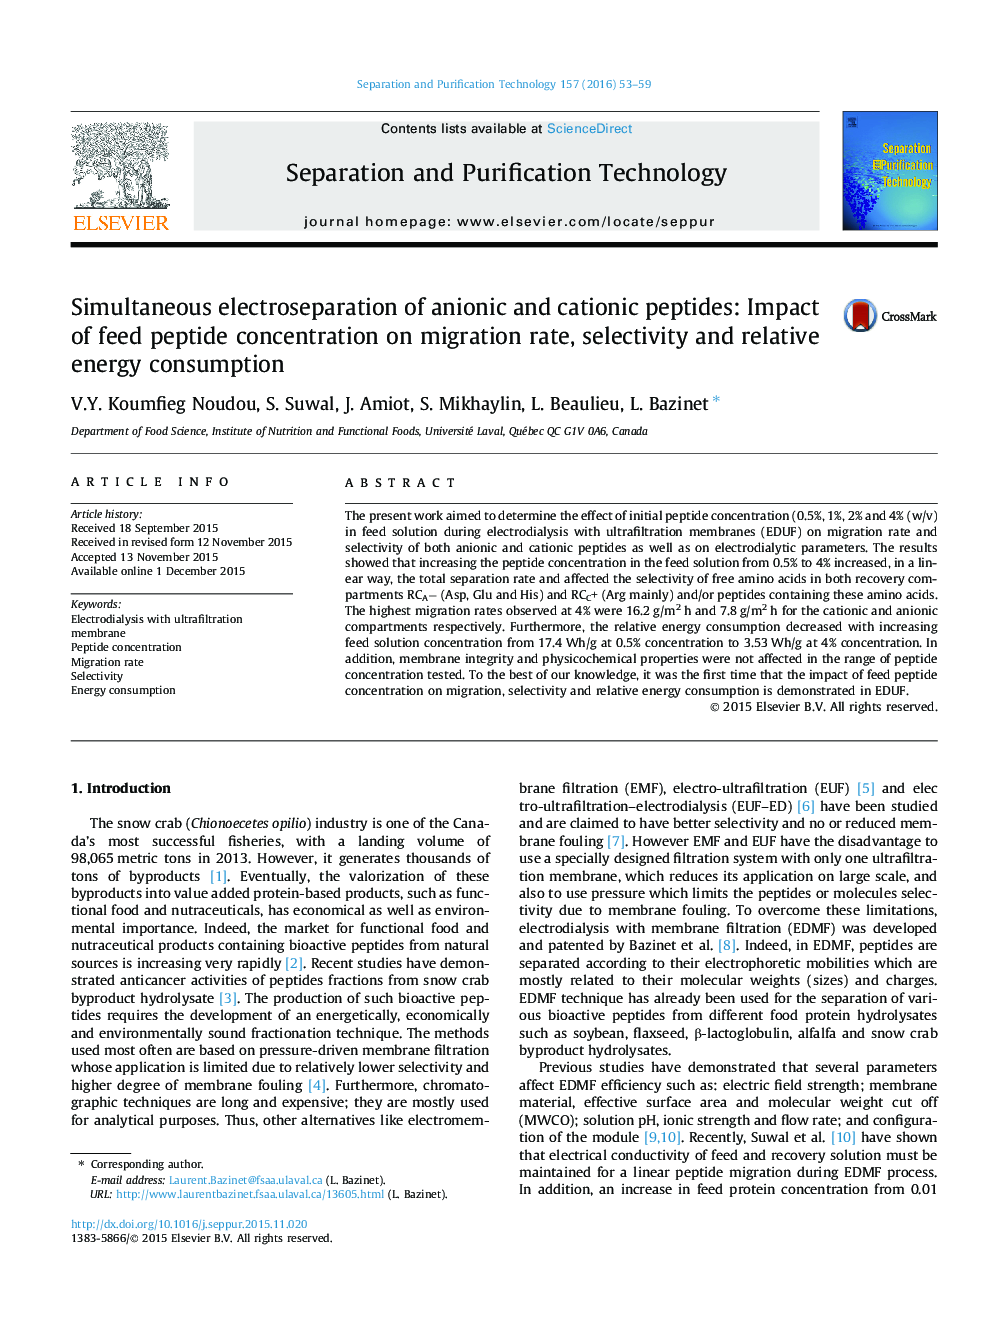 جداسازی الکتریکی همزمان پپتیدهای آنیونی و کاتیونی: تاثیر غلظت پپتید خوراک بر میزان مهاجرت، انتخابی و مصرف انرژی نسبی